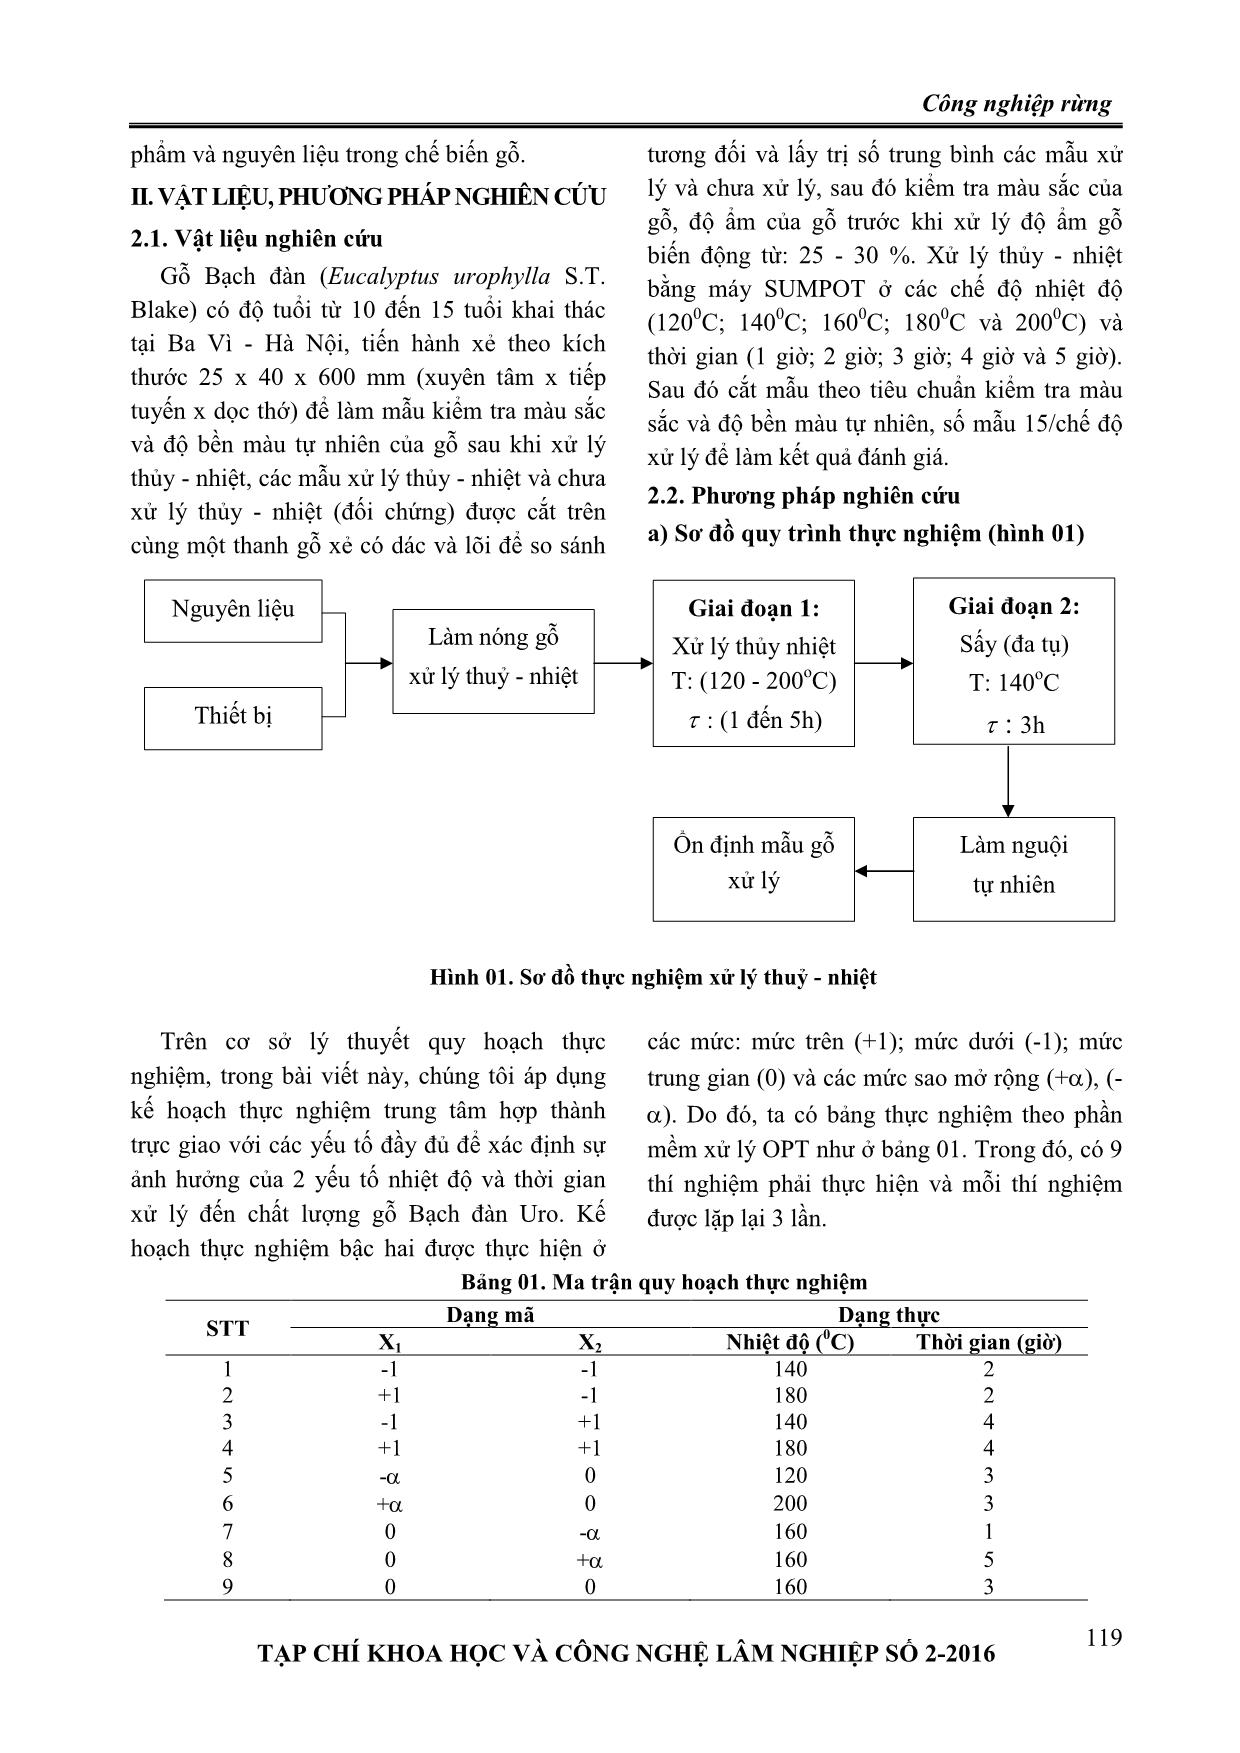 Ảnh hưởng của chế độ xử lý thủy - nhiệt đến sự thay đổi màu sắc và sự ổn định màu gỗ bạch đàn (Eucalyptus urophylla S.T. Blake) trang 2